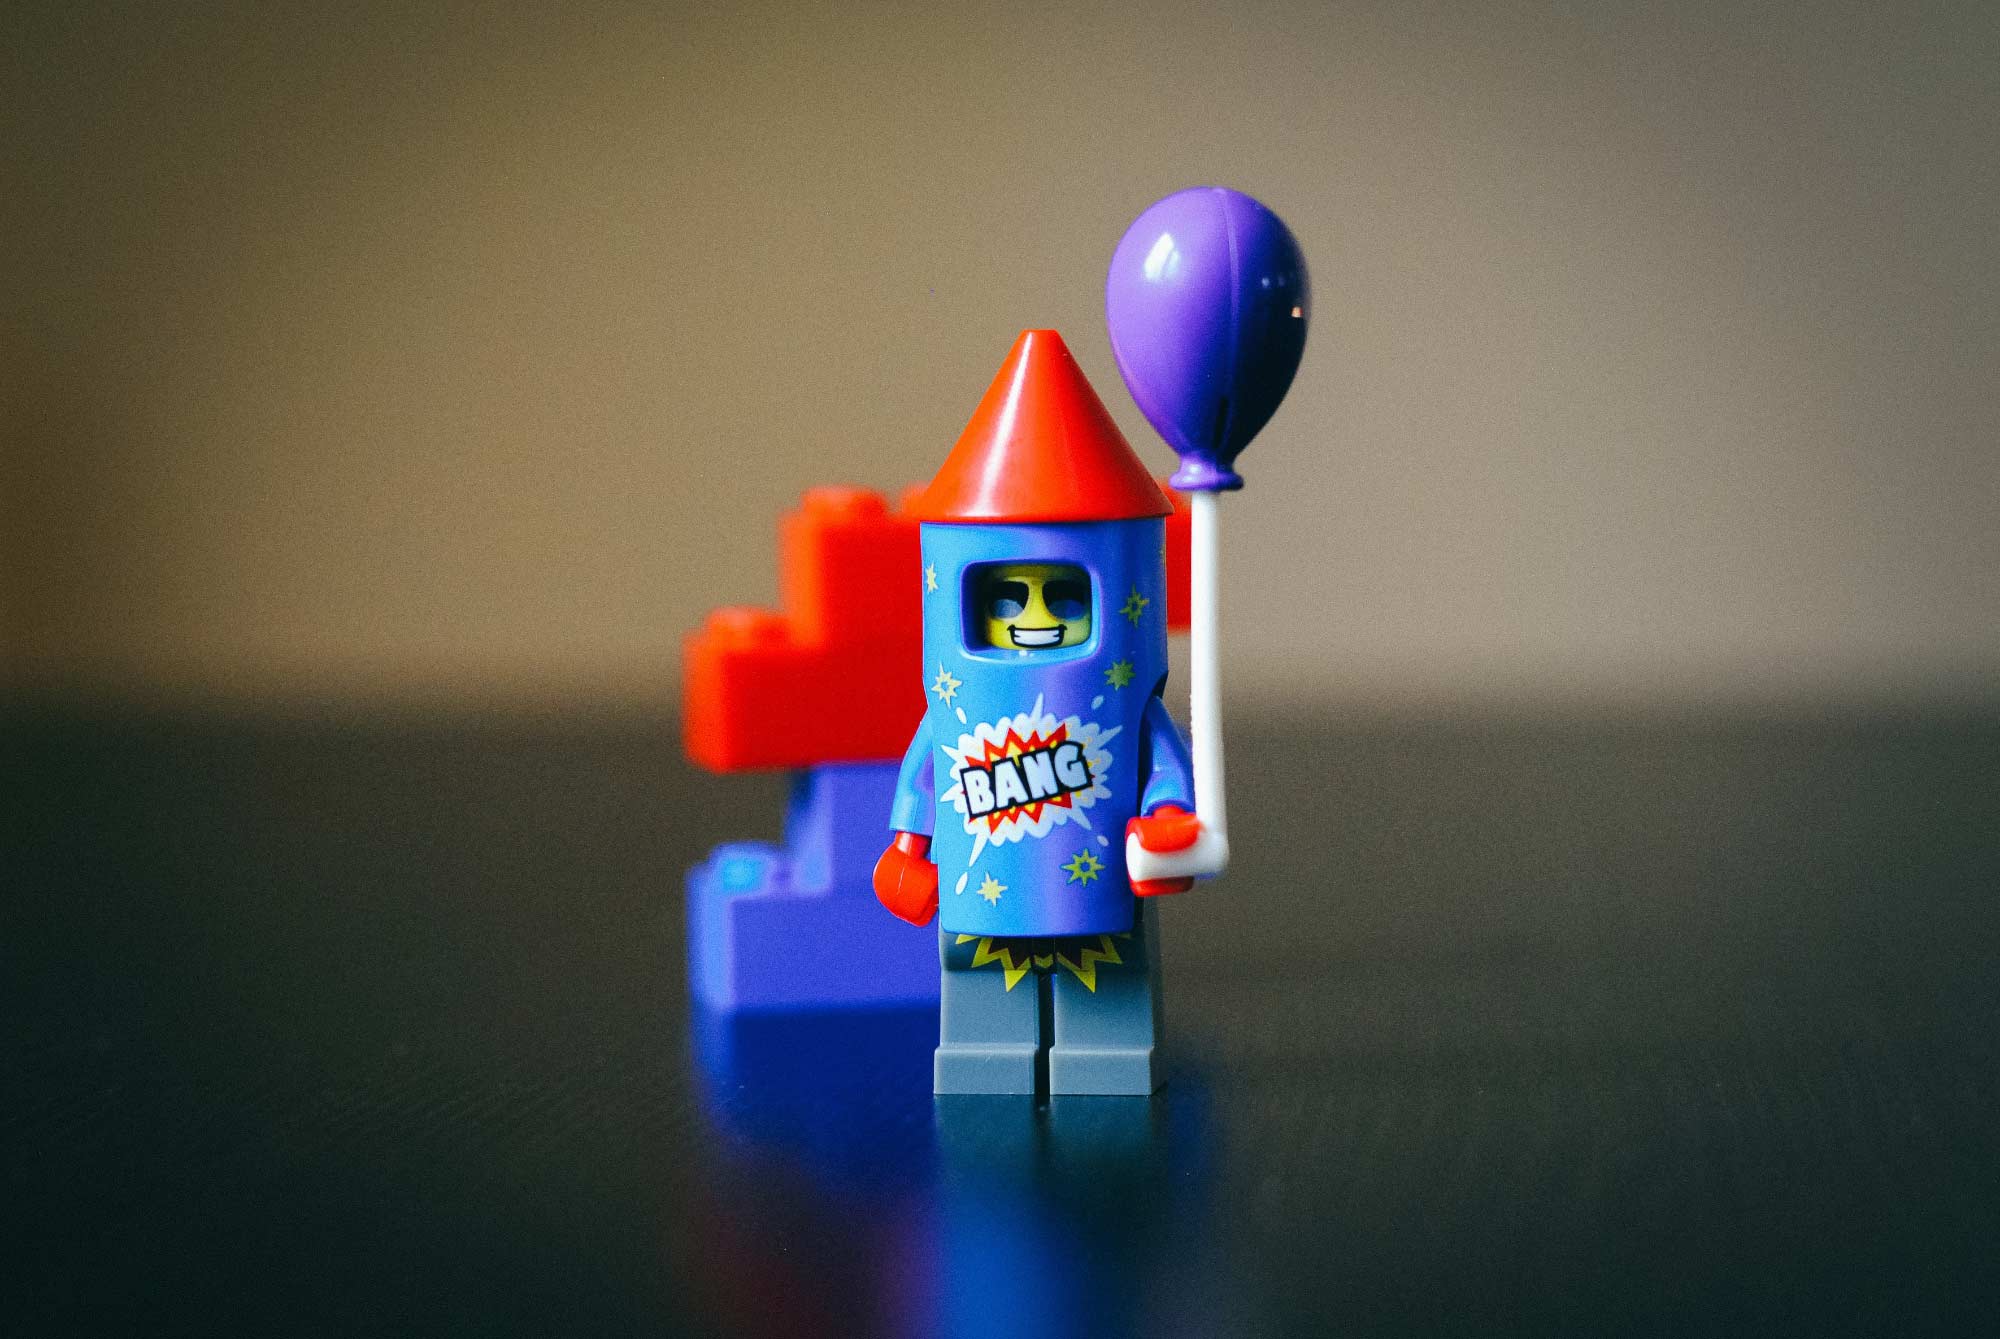 Lego rocket man ready for takeoff